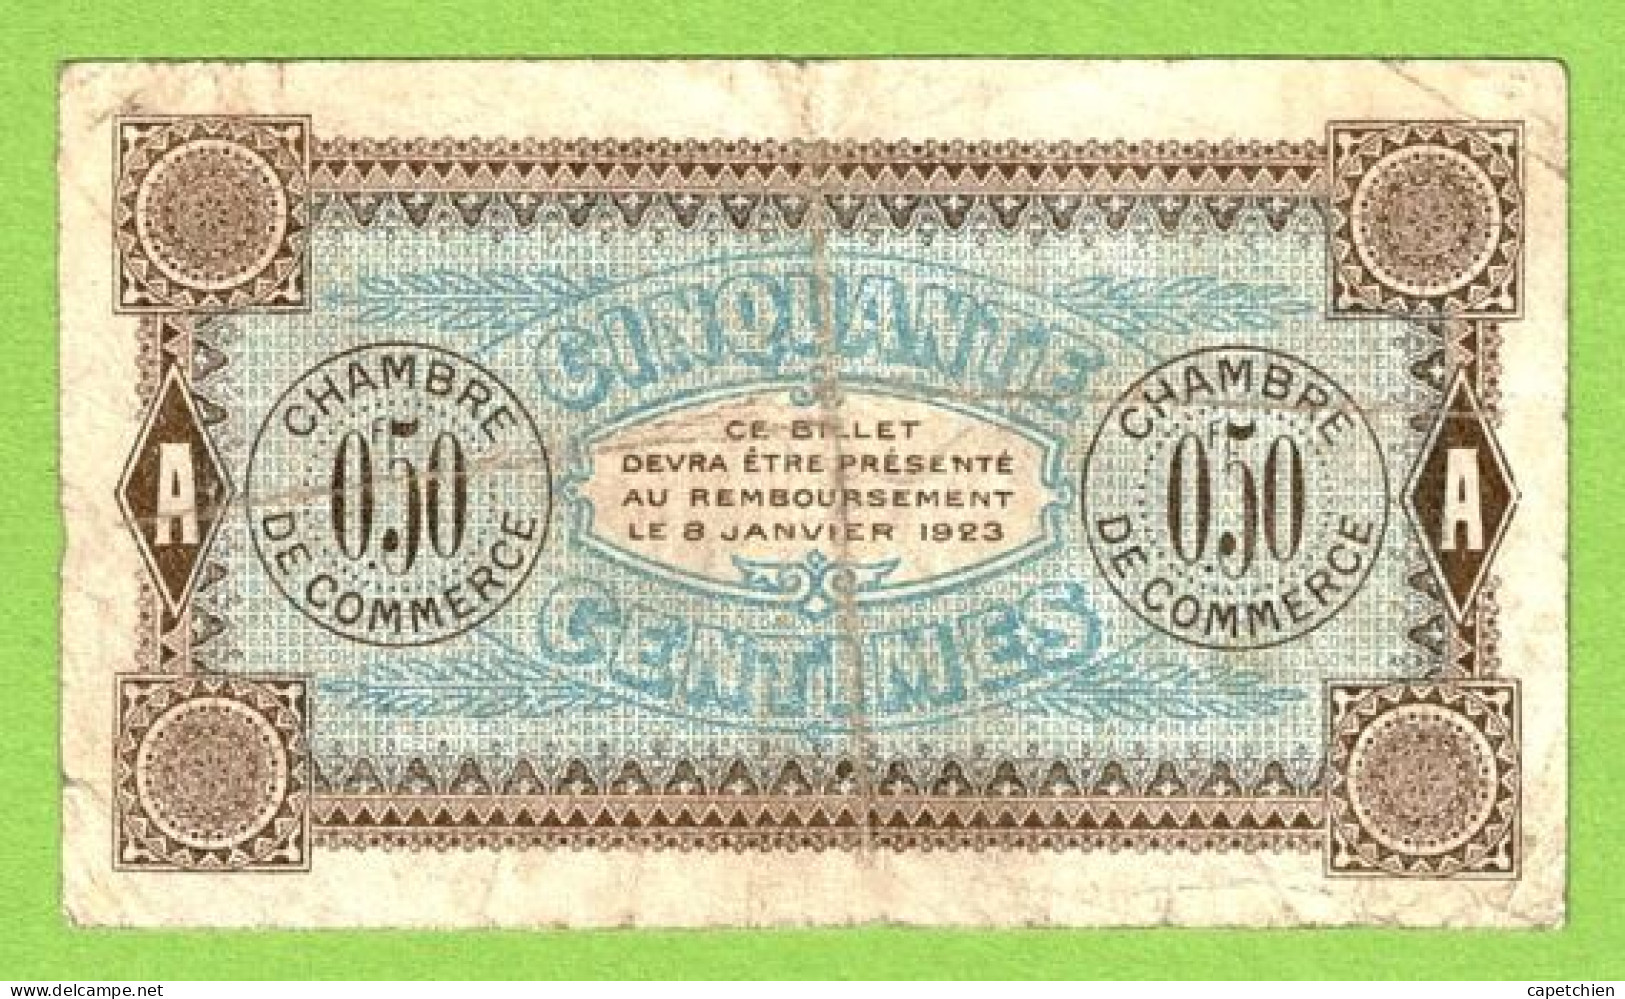 FRANCE / AUXERRE / 50 CENTIMES / 8 Janvier 1920 / N° 018559 / SERIE  I  109 - Chambre De Commerce